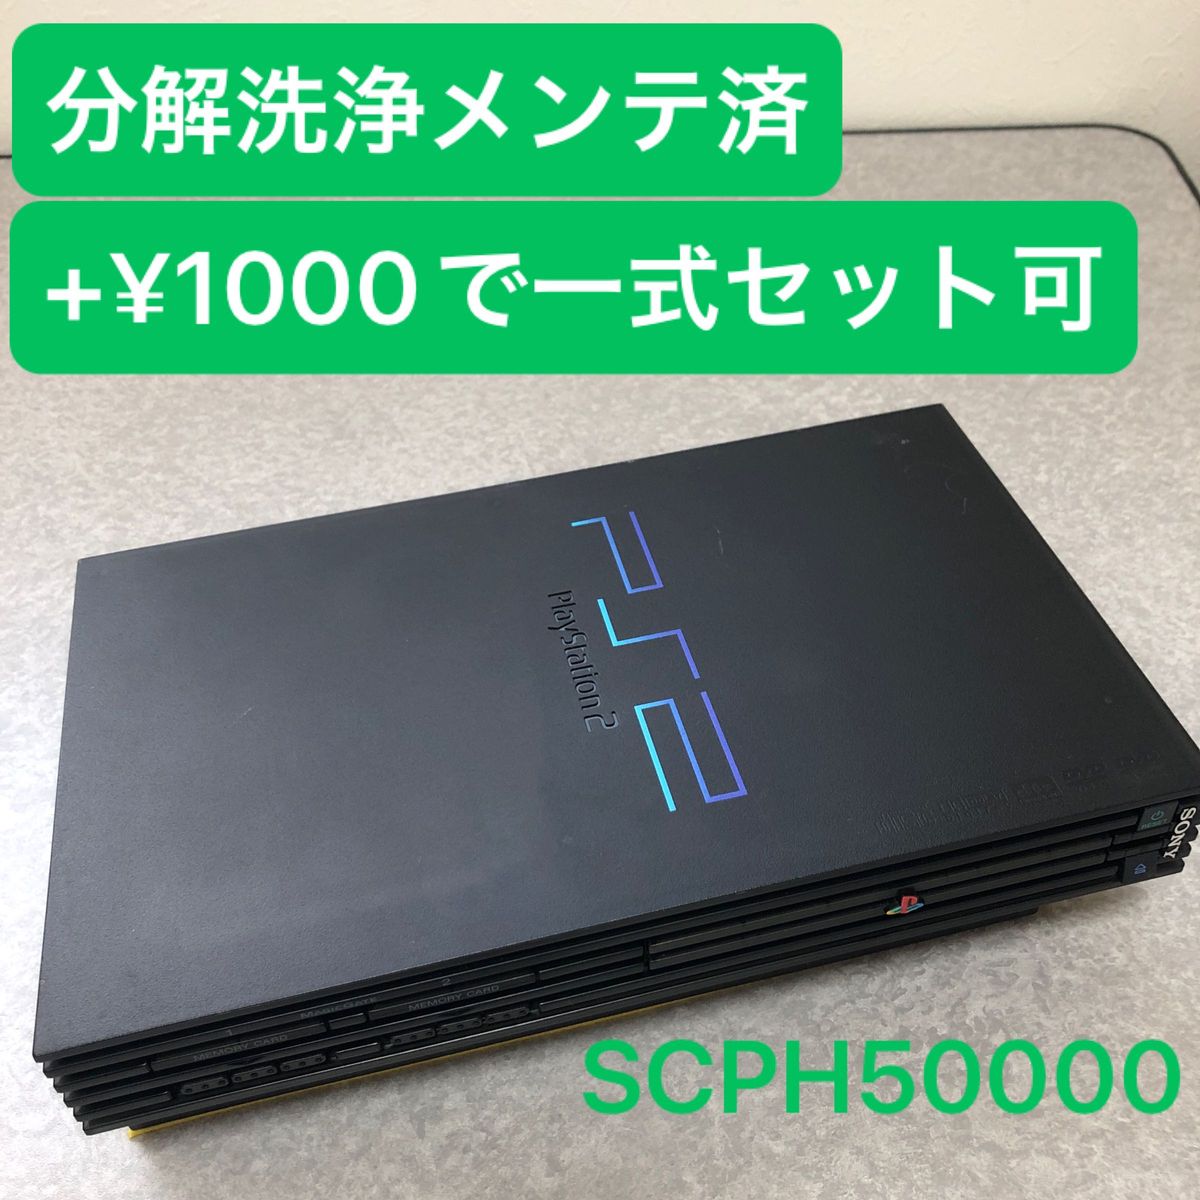 分解洗浄メンテ済SCPH50000ミッドナイトブラック PS2 プレイステーション2 本体　一式セットも可能CN